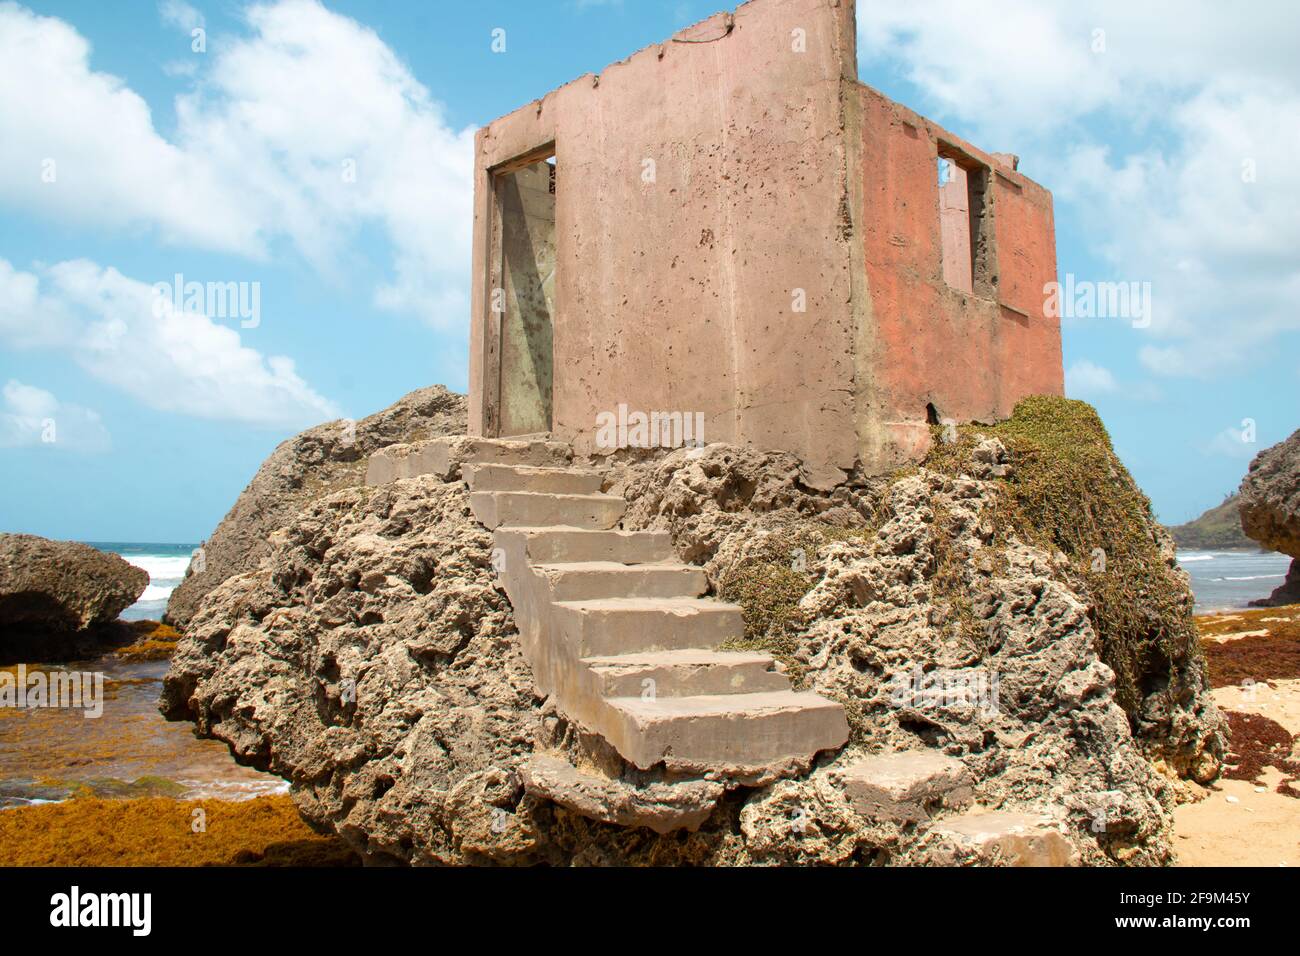 Ruines d'un bâtiment en béton rose sale sur une formation de roches sur la plage de Bathsheba, à la Barbade, pendant la journée. Nuages épais, ciel bleu. Banque D'Images